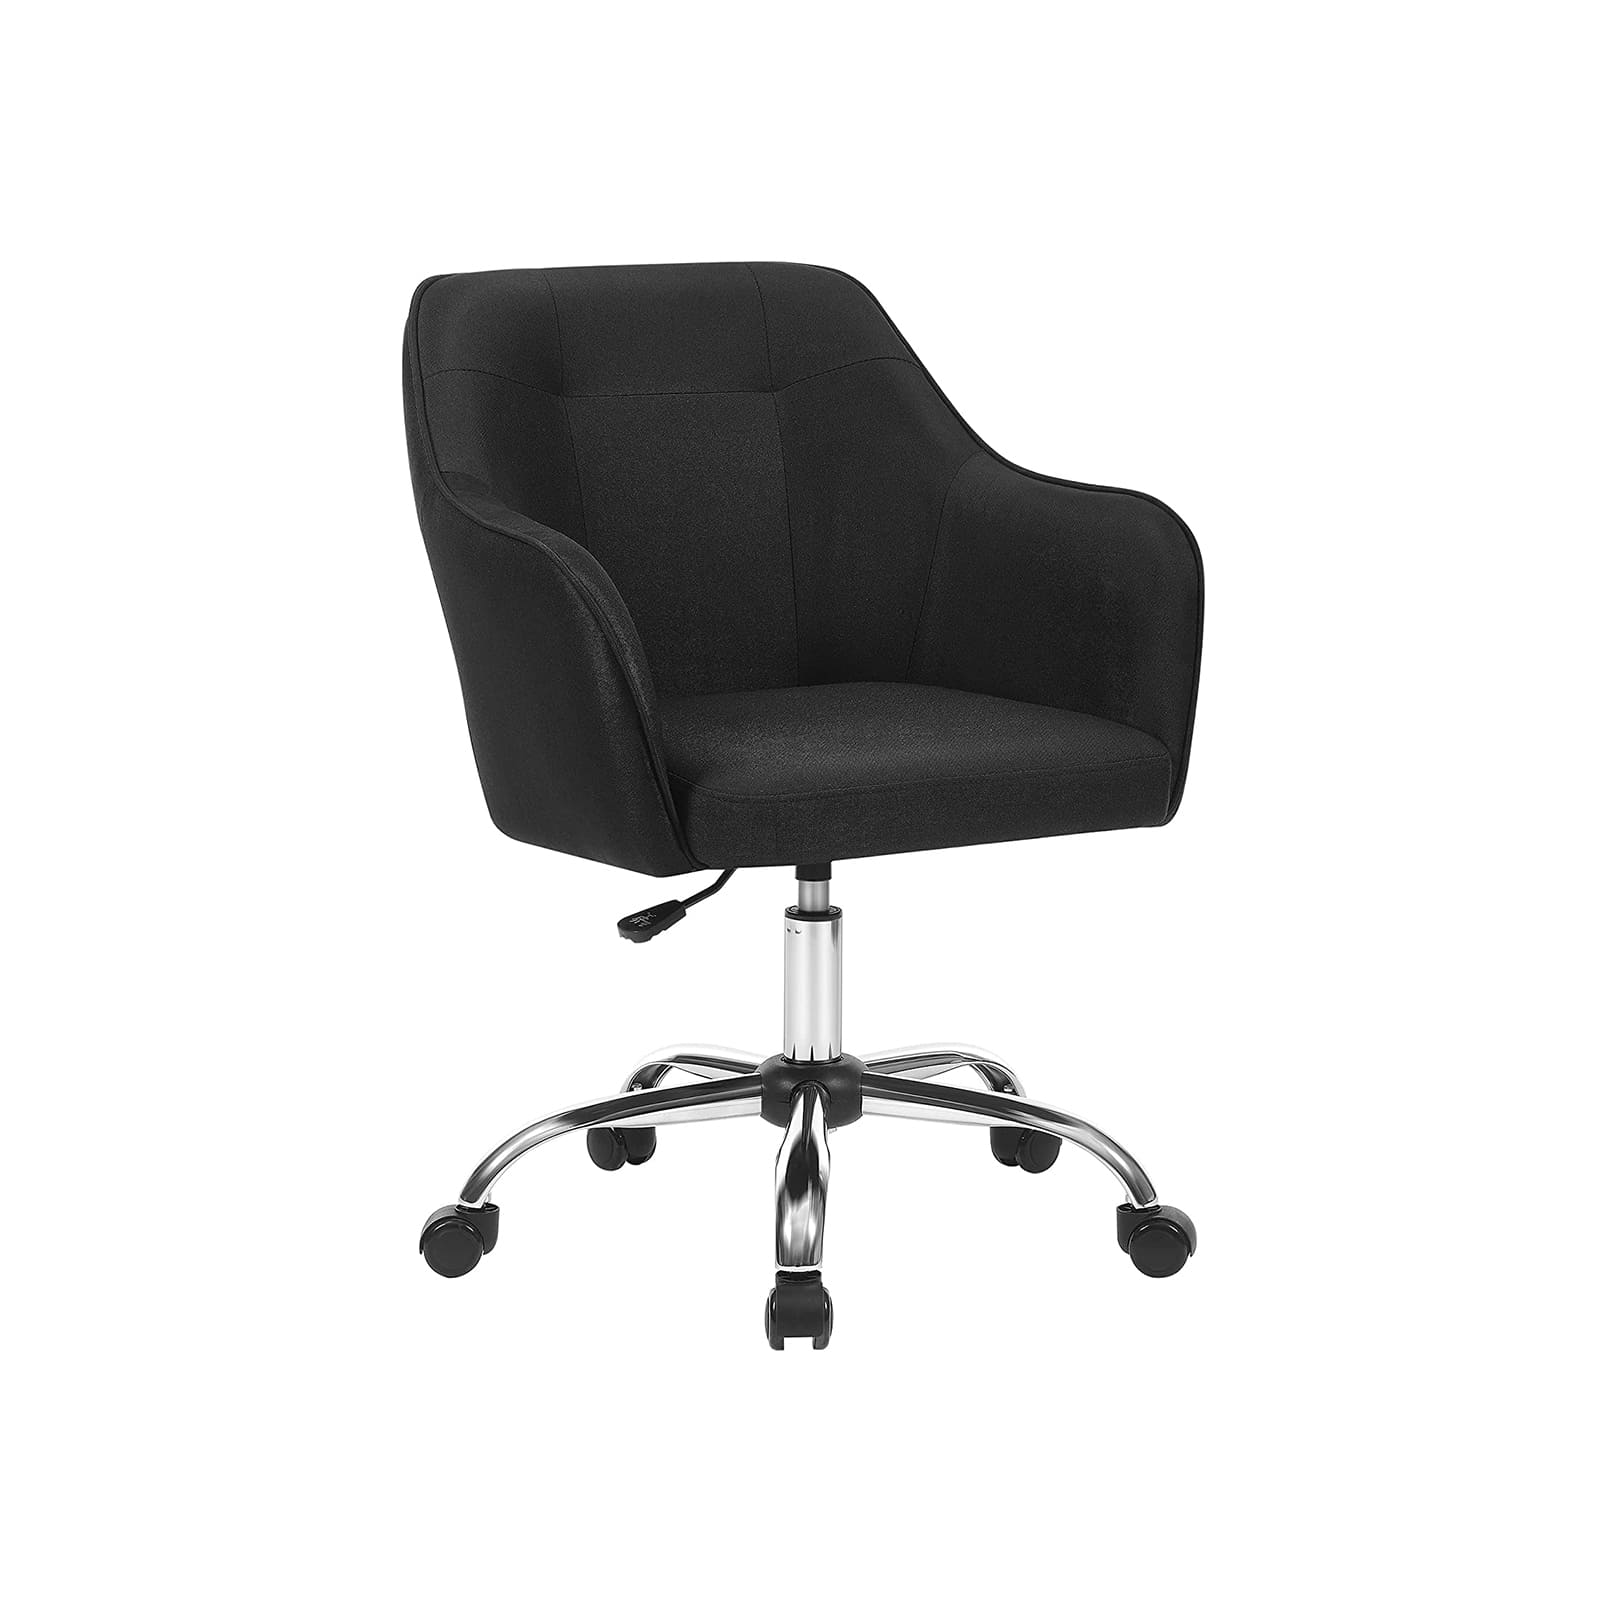 Chaise bureau, Le fauteuil de bureau ergonomique en tissu noir, Il est pour travailler, mais aussi - SONGMICS